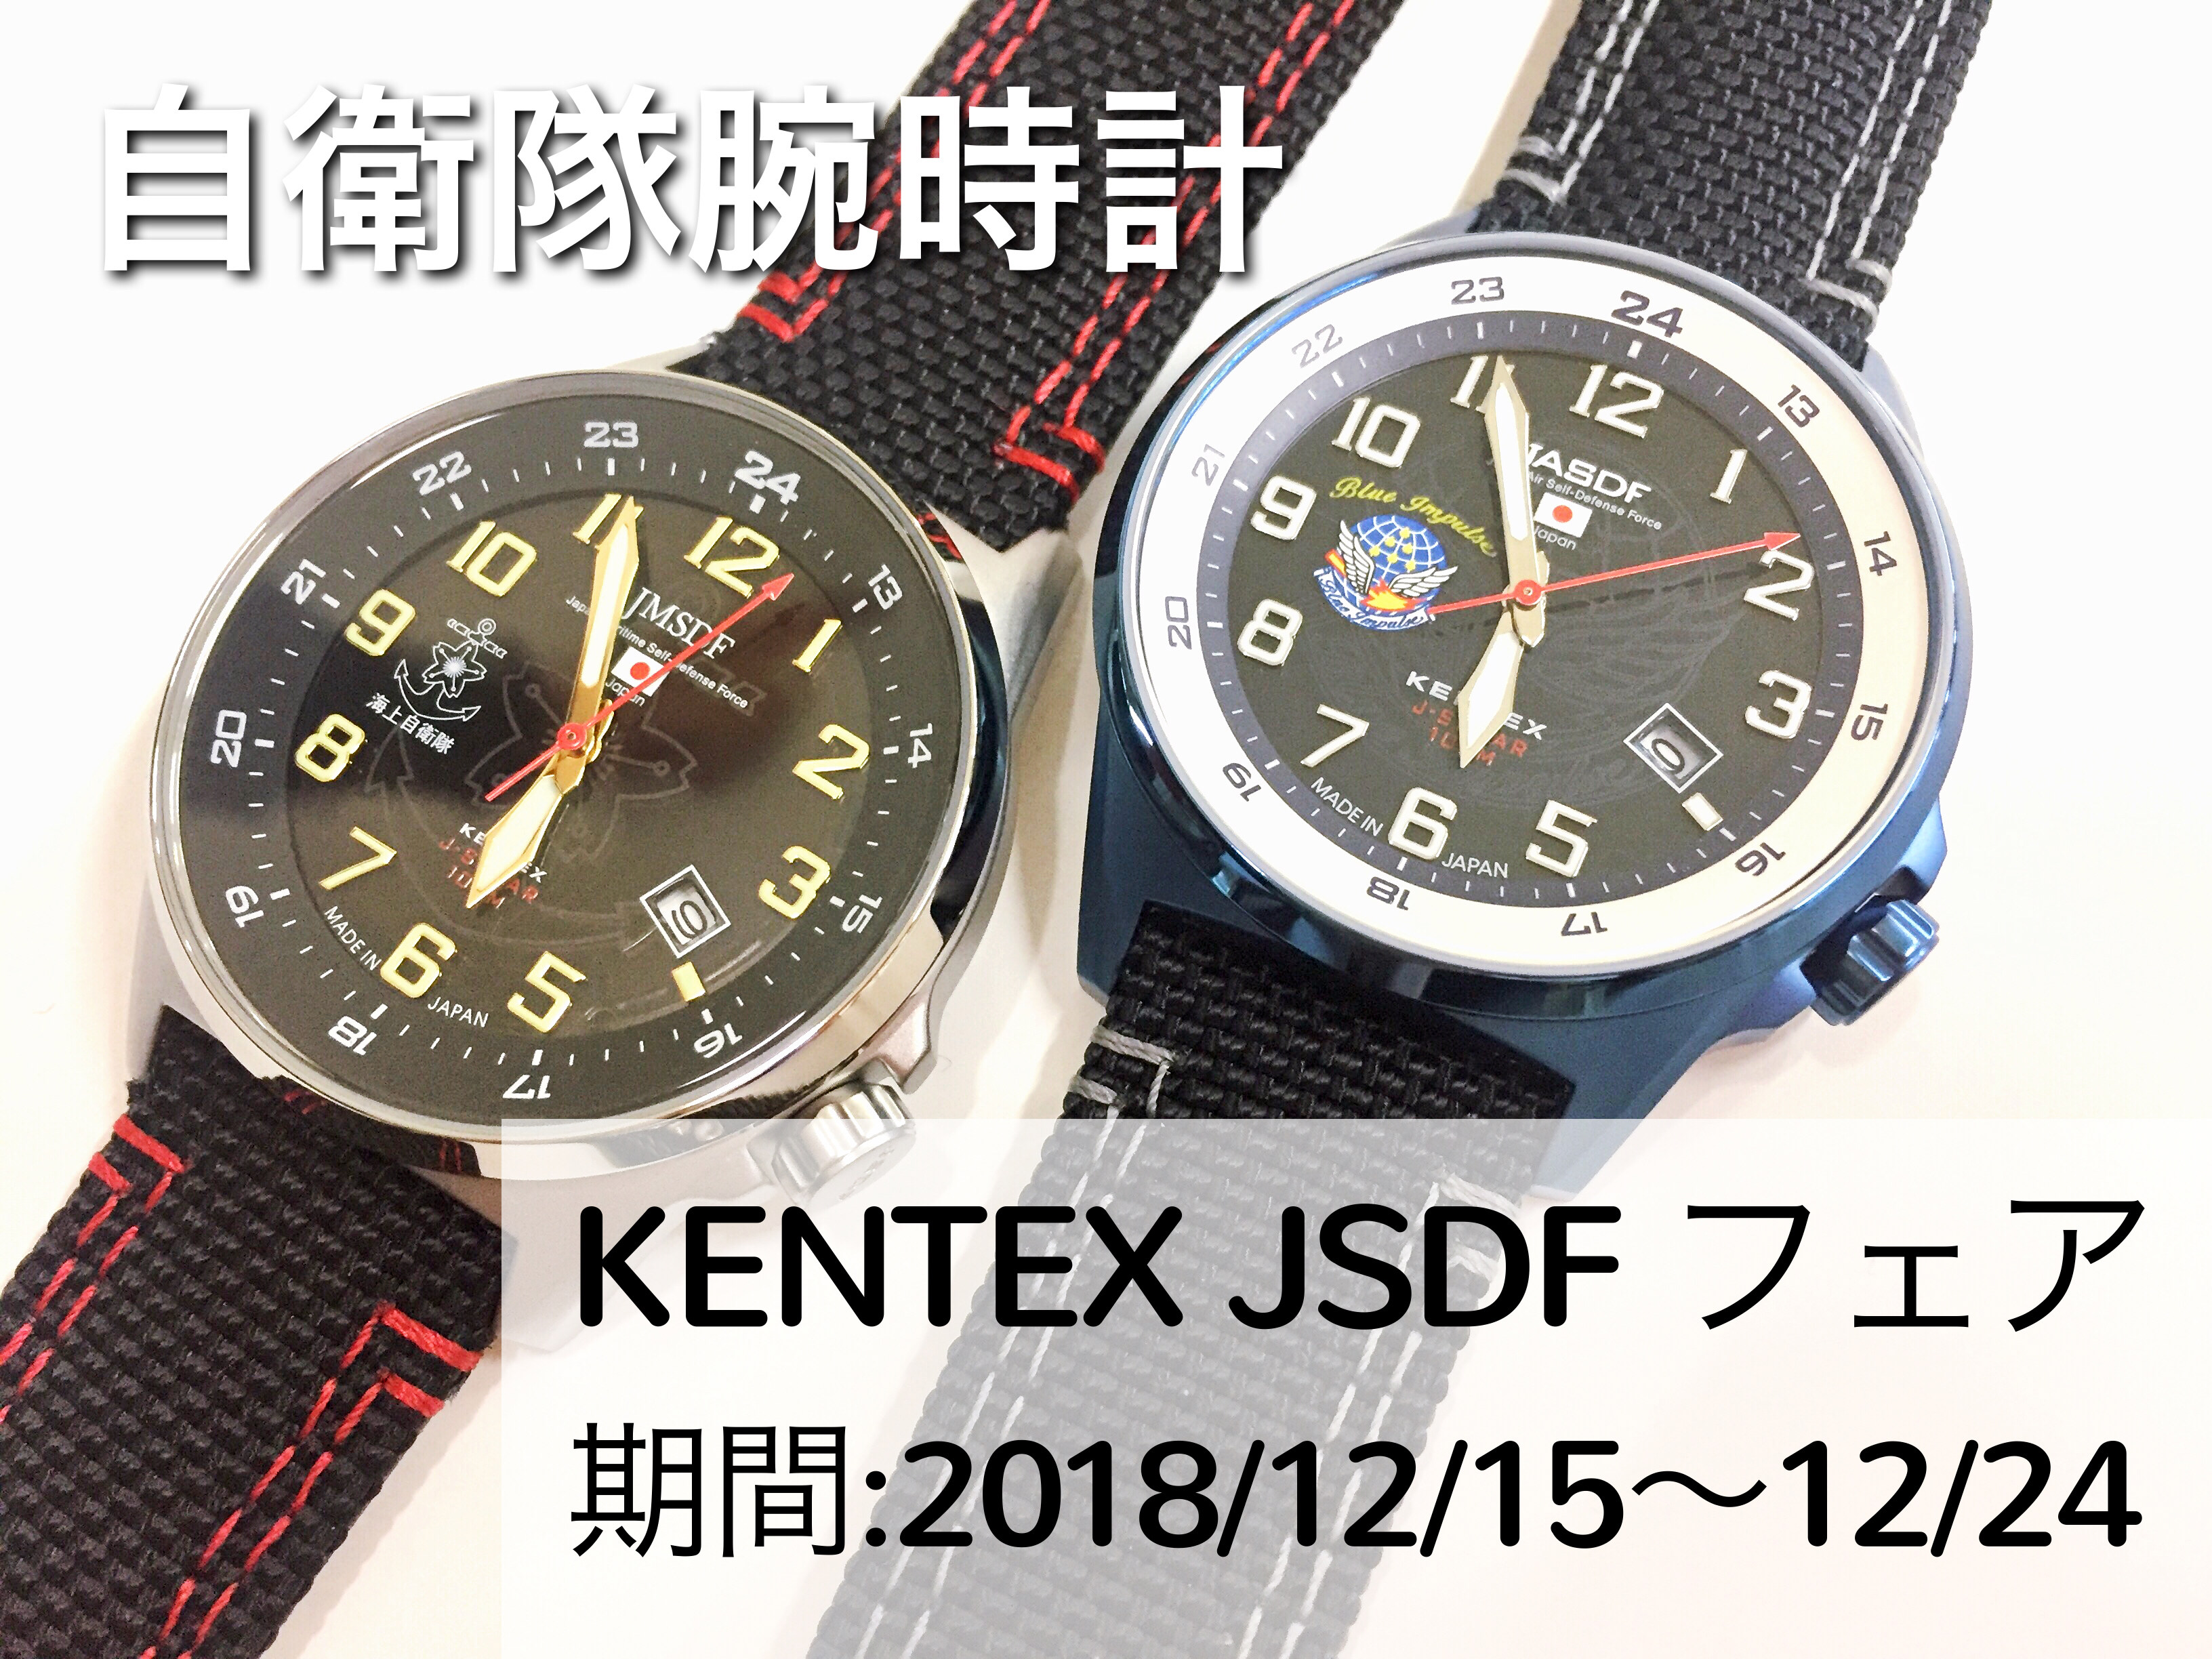 KENTEX／ケンテックス・JSDF（自衛隊腕時計）フェア開催 